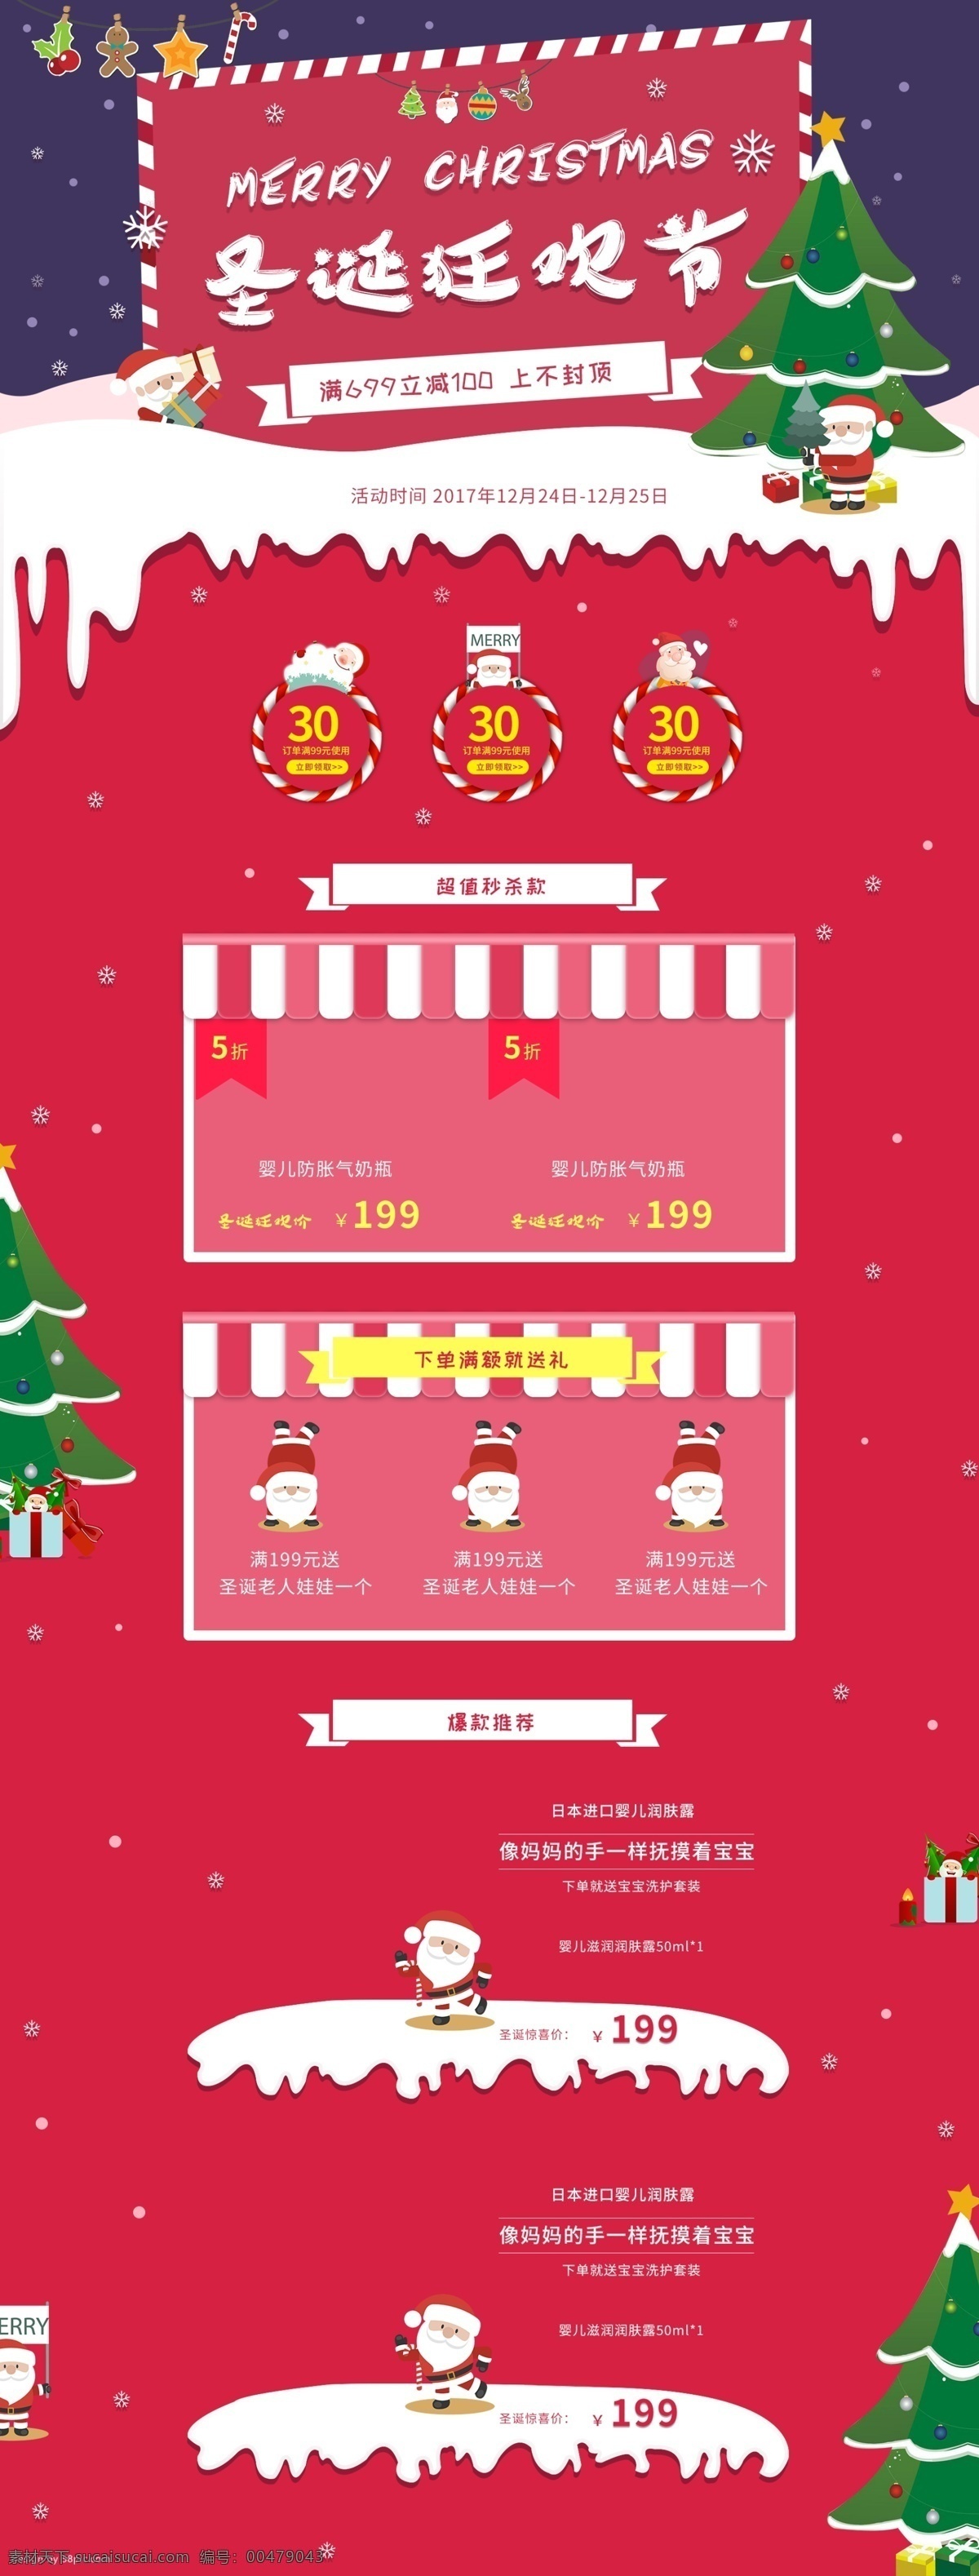 电商 淘宝 圣诞节 狂欢 首页 模板 挂饰 红色 圣诞老人 圣诞树 喜庆 雪花 雪景